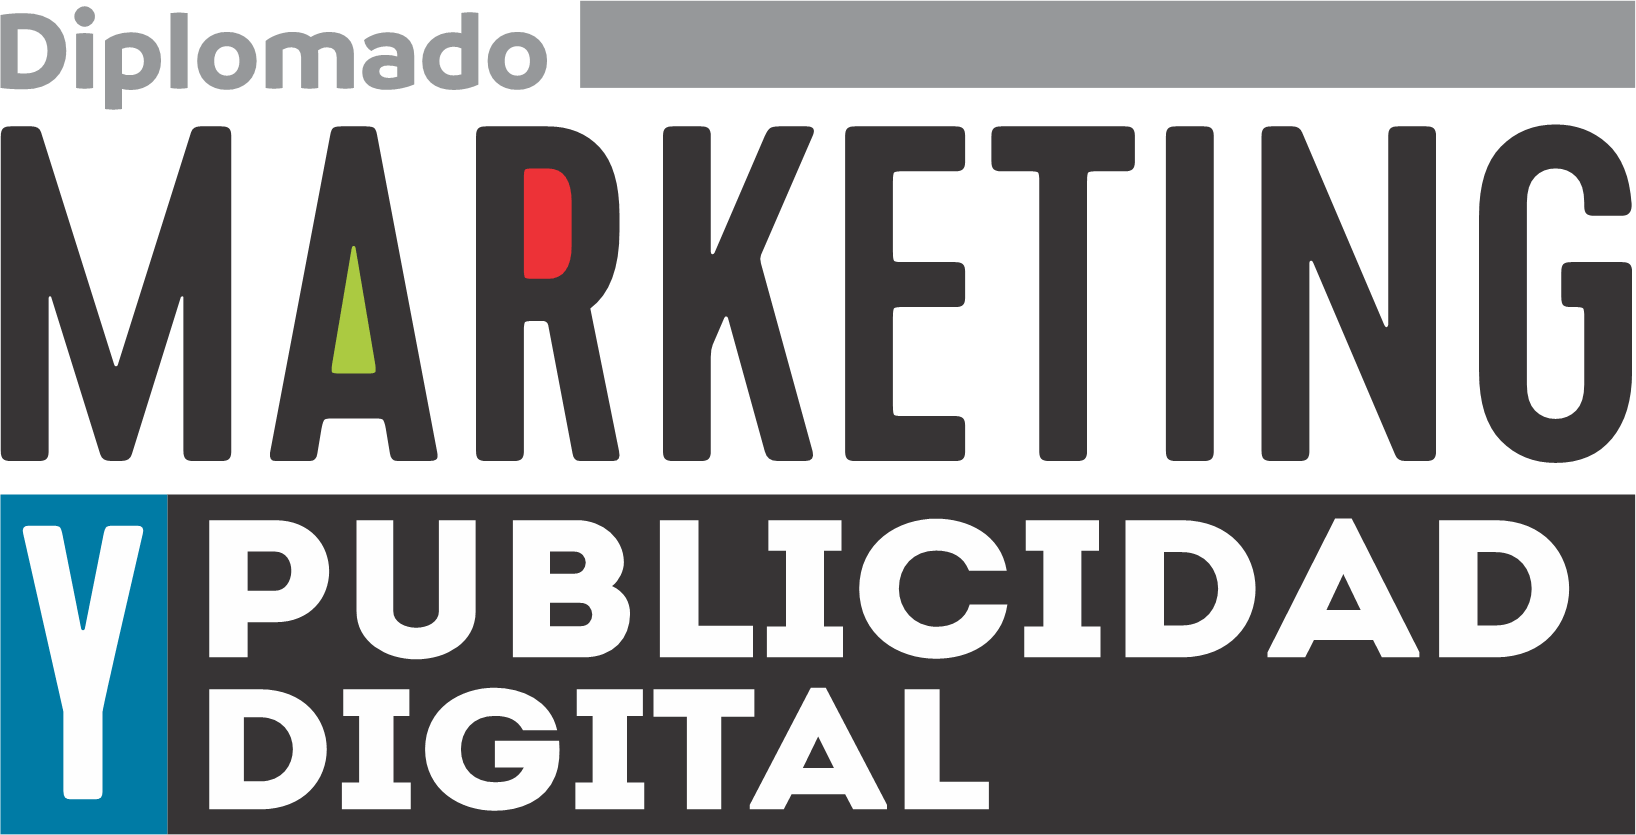 Diplomado Marketing y Publicidad Digital